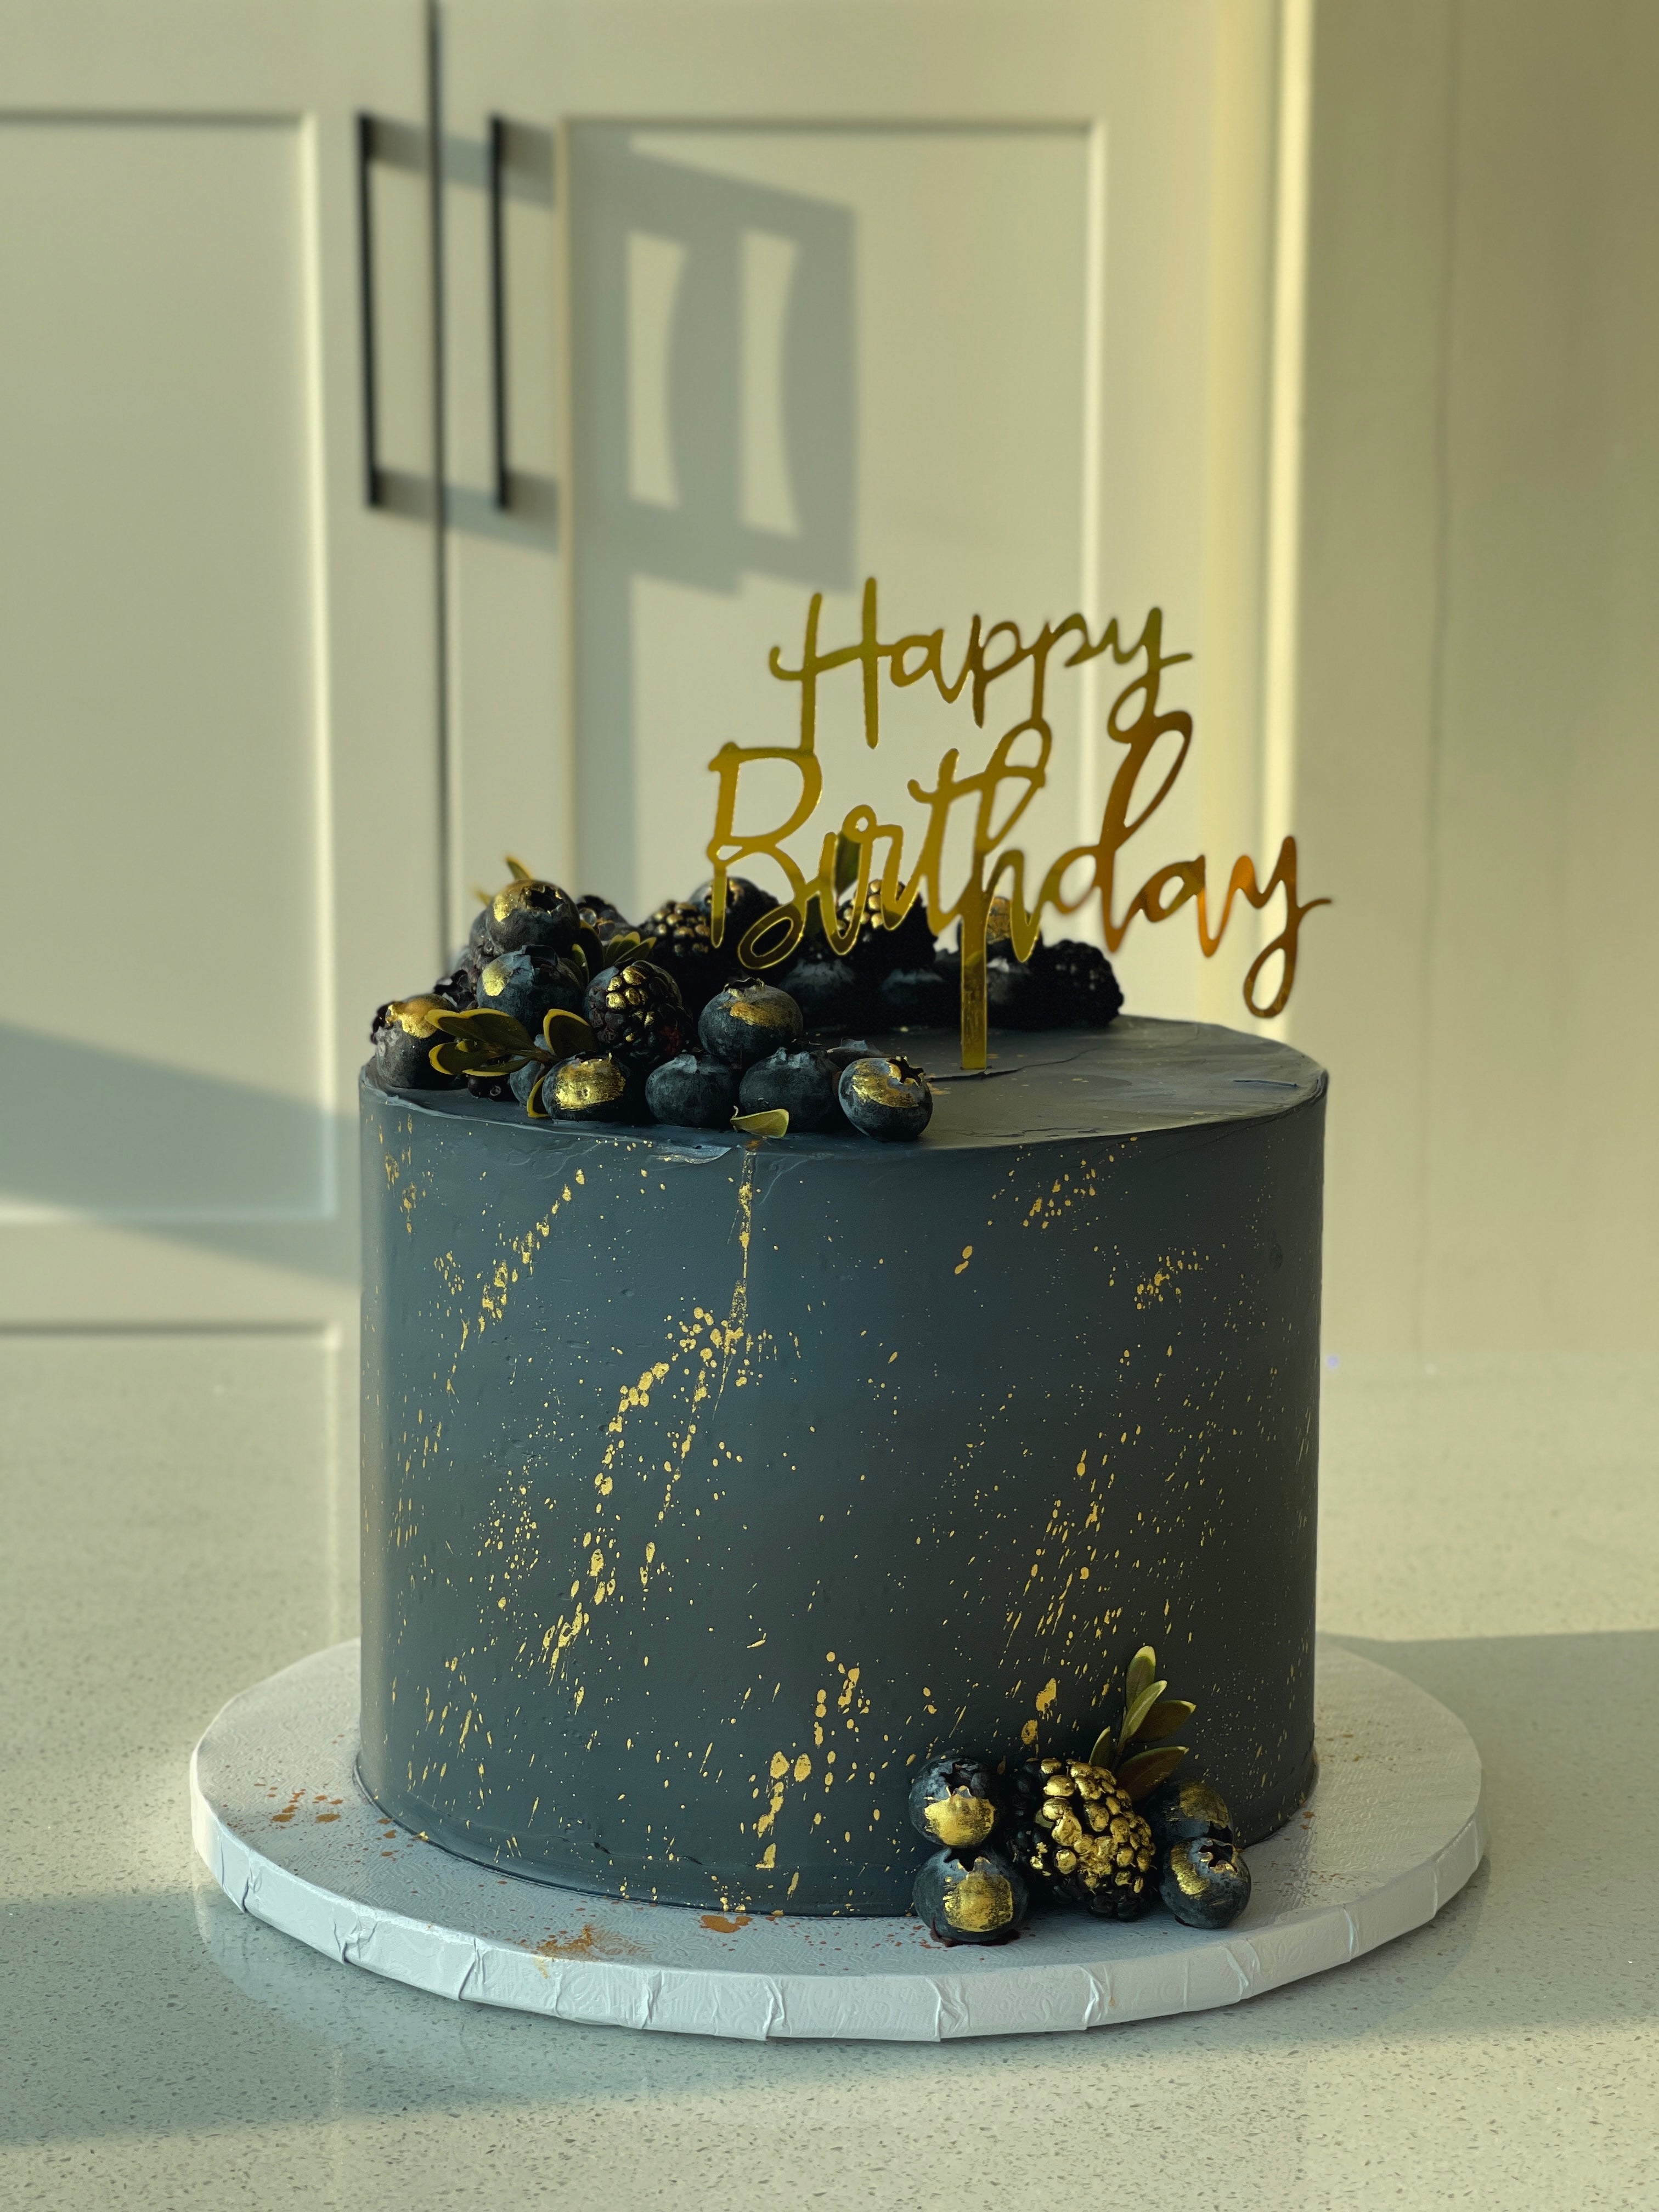 Blueberry celebration cake | BBC Good Food